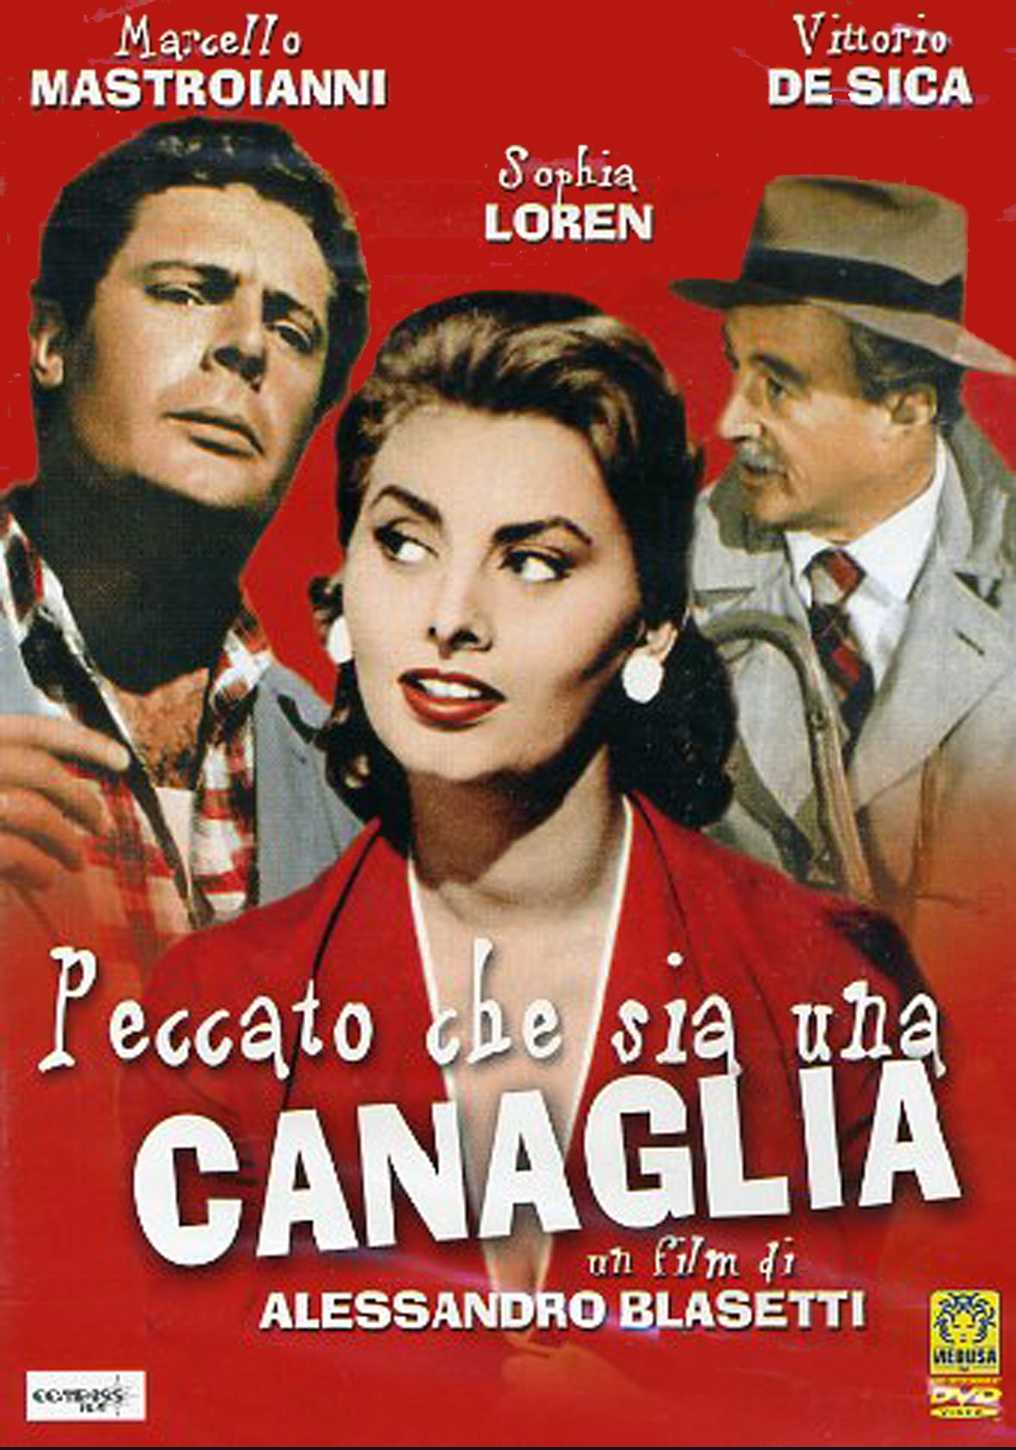 Una per che. Жаль, что ты каналья (1954). Софи Лорен жаль что ты каналья.